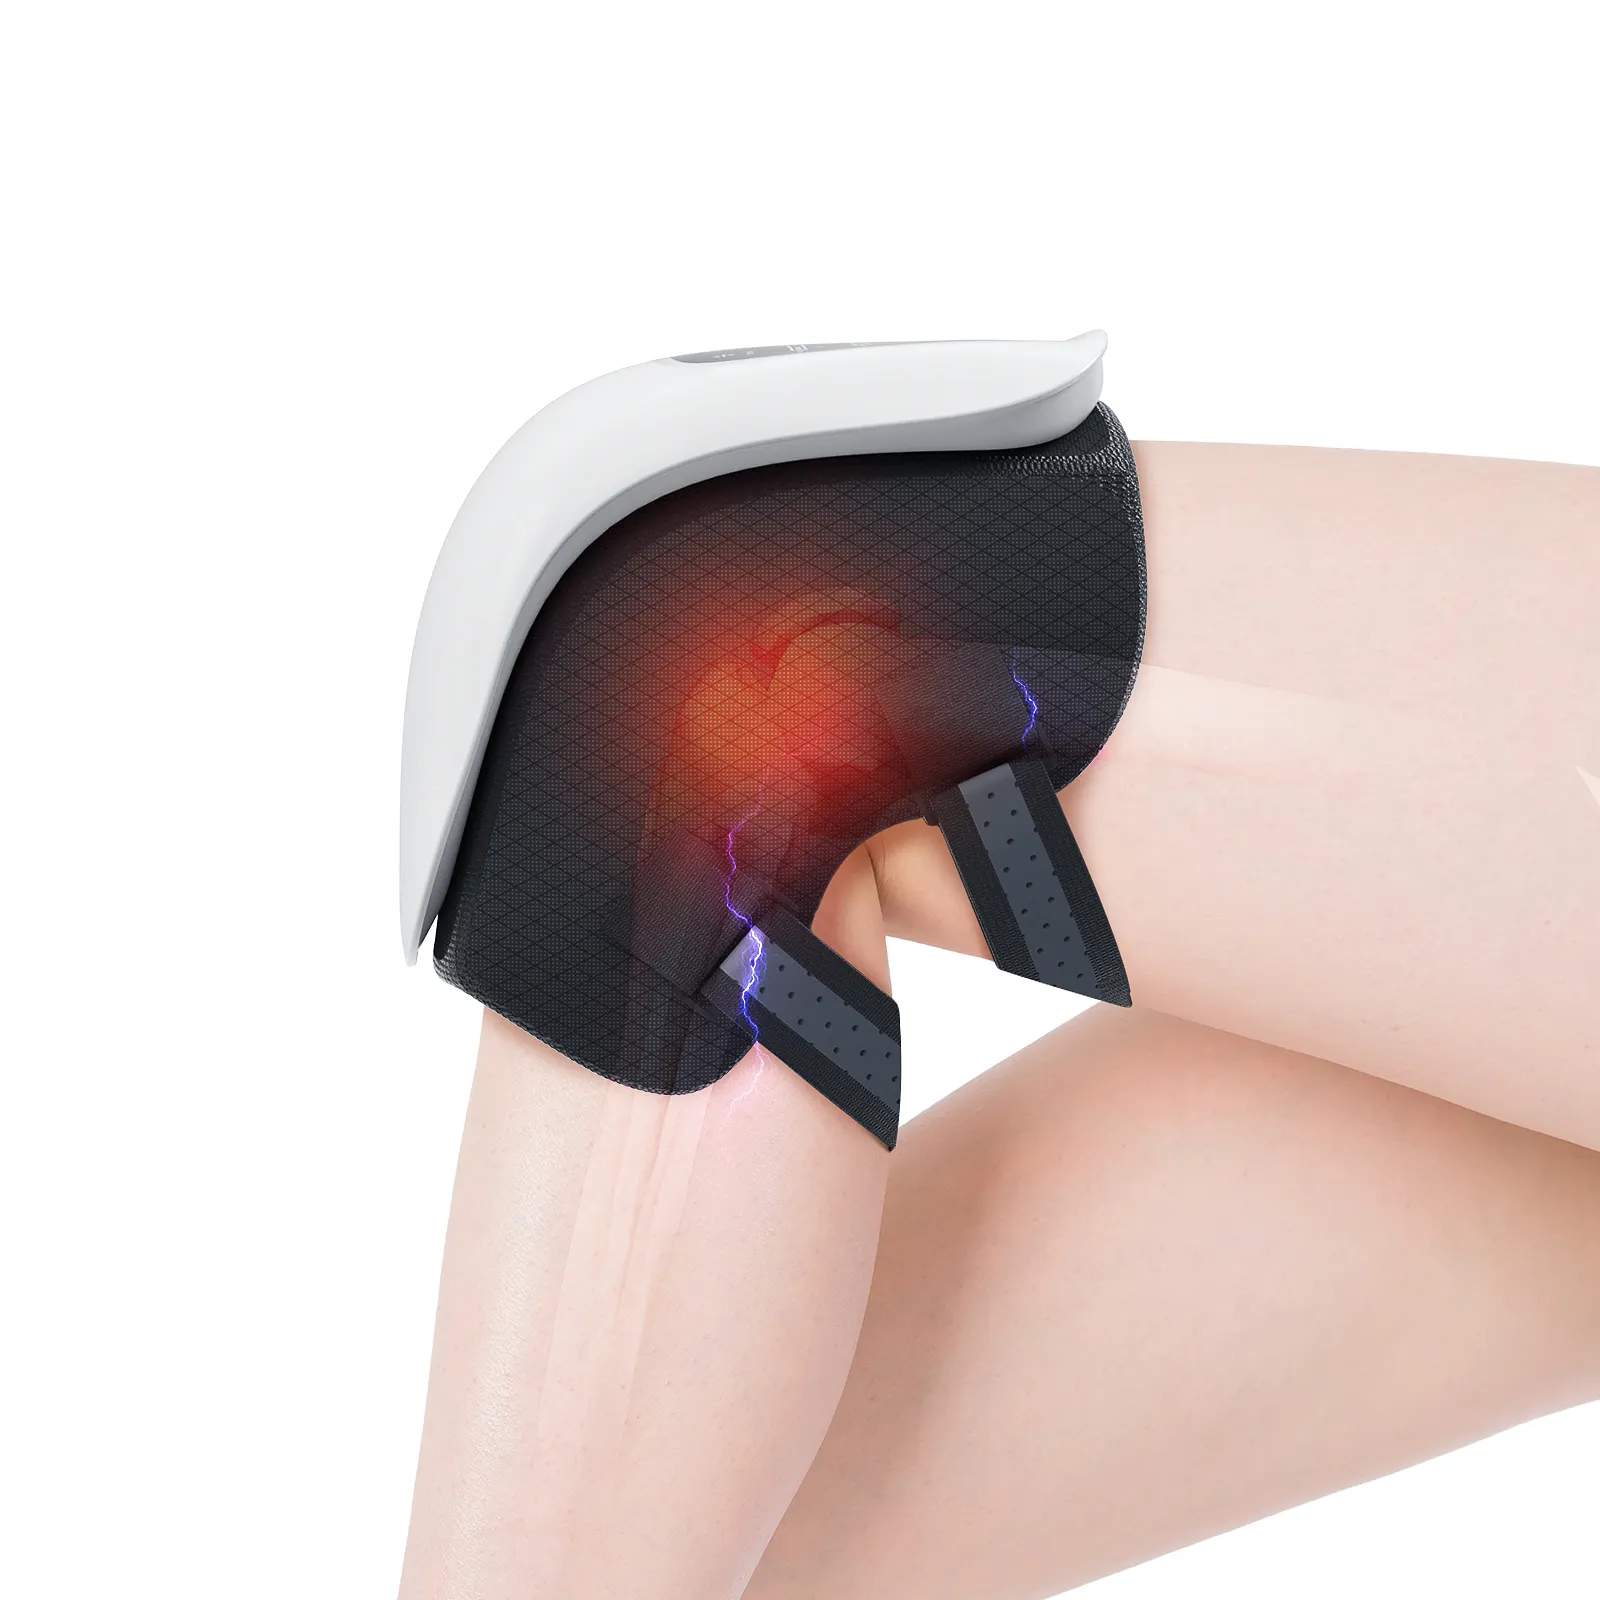 טיפול חכם באינפרא אדום במפרקי הברך מכונת עיסוי חימום כריות לשיכוך כאבים מכשיר לעיסוי ברכיים חשמלי עם חום ודחיסת אוויר